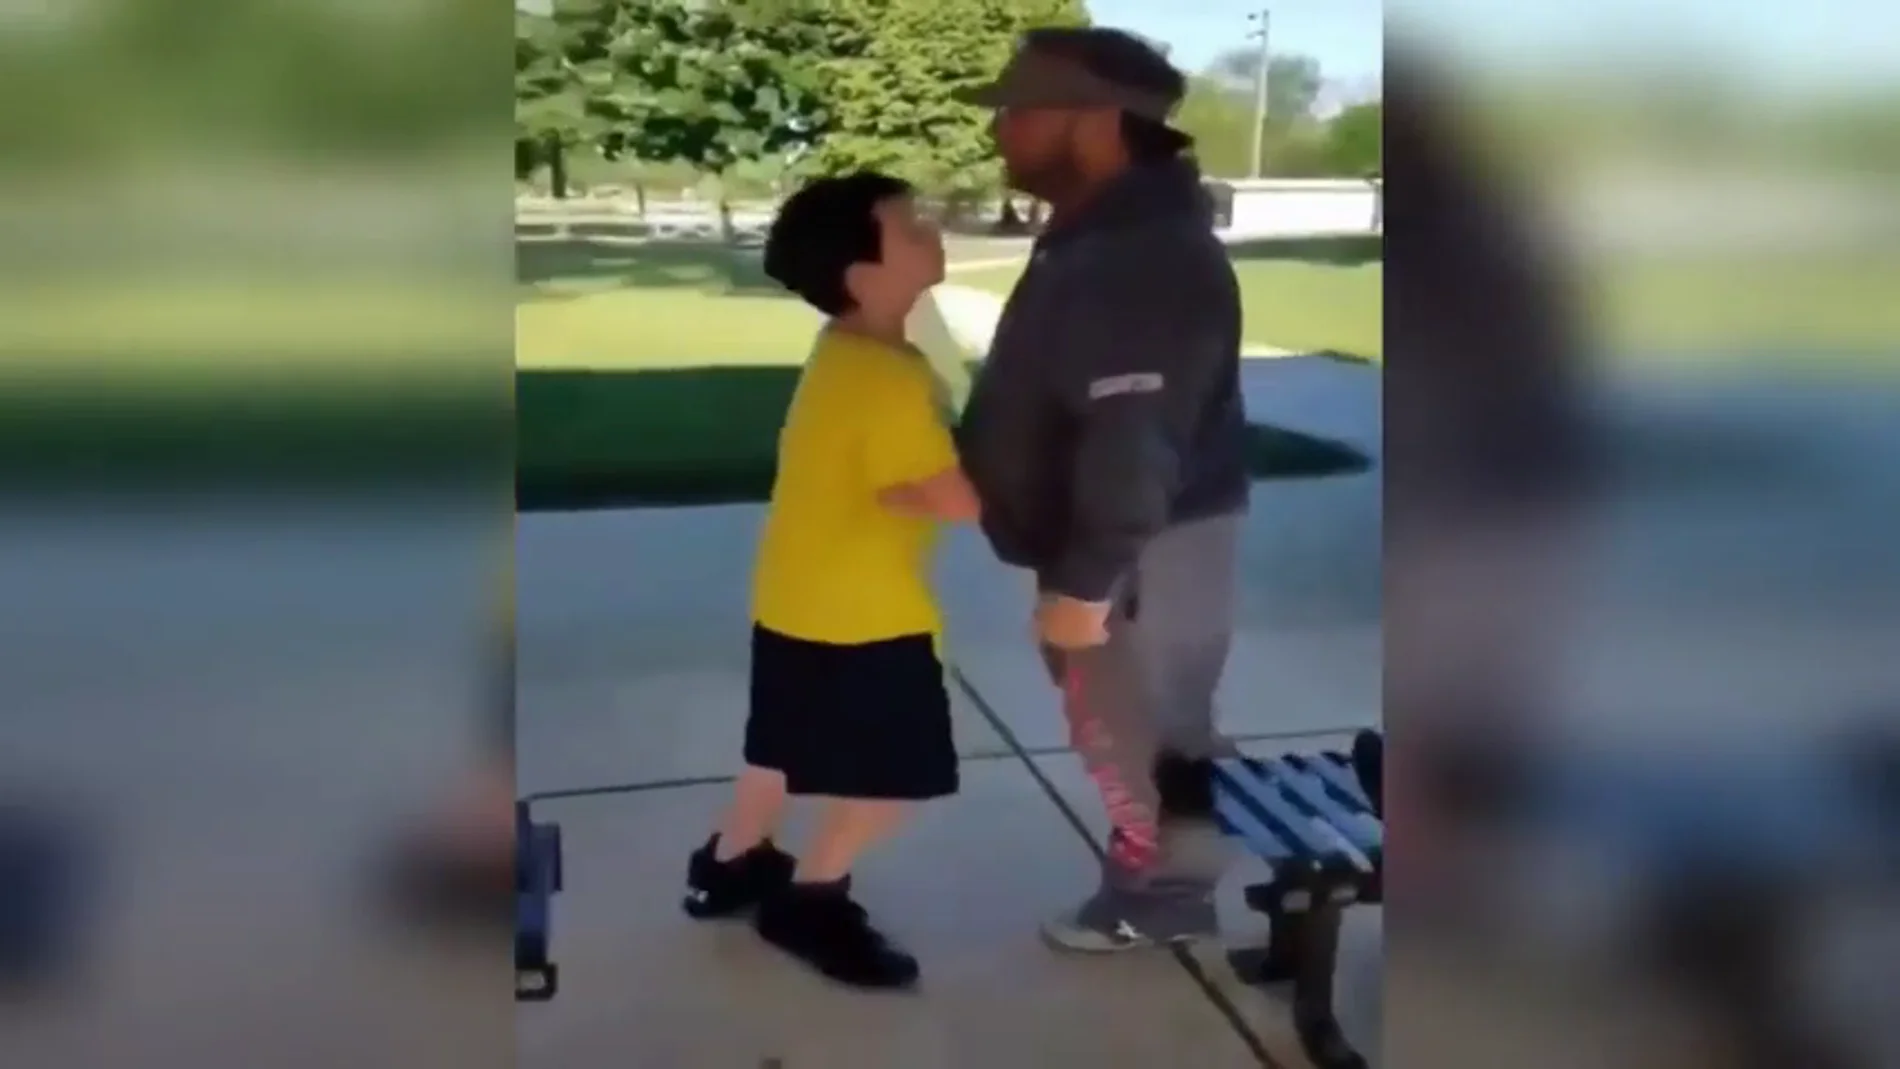 Polémica en redes sociales por un vídeo viral en el que un hombre golpea a un niño y lo tira al suelo